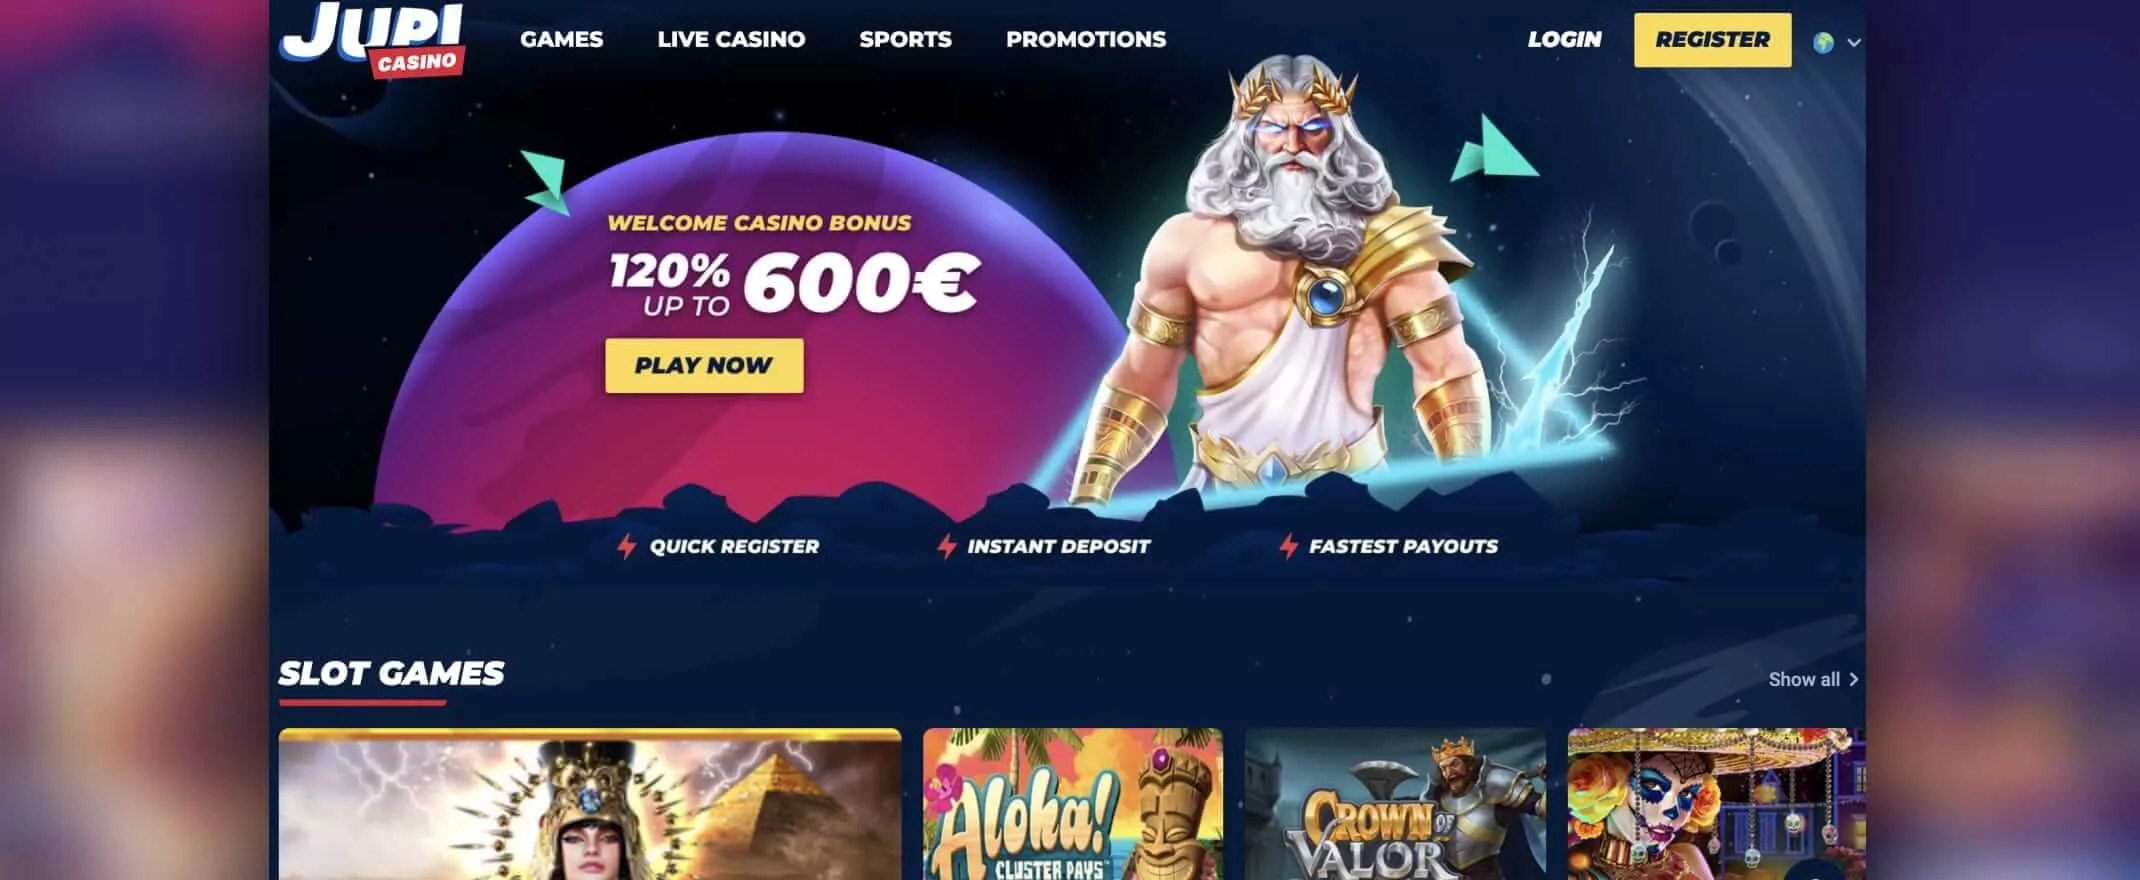 Homepage screenshot of Jupi Casino